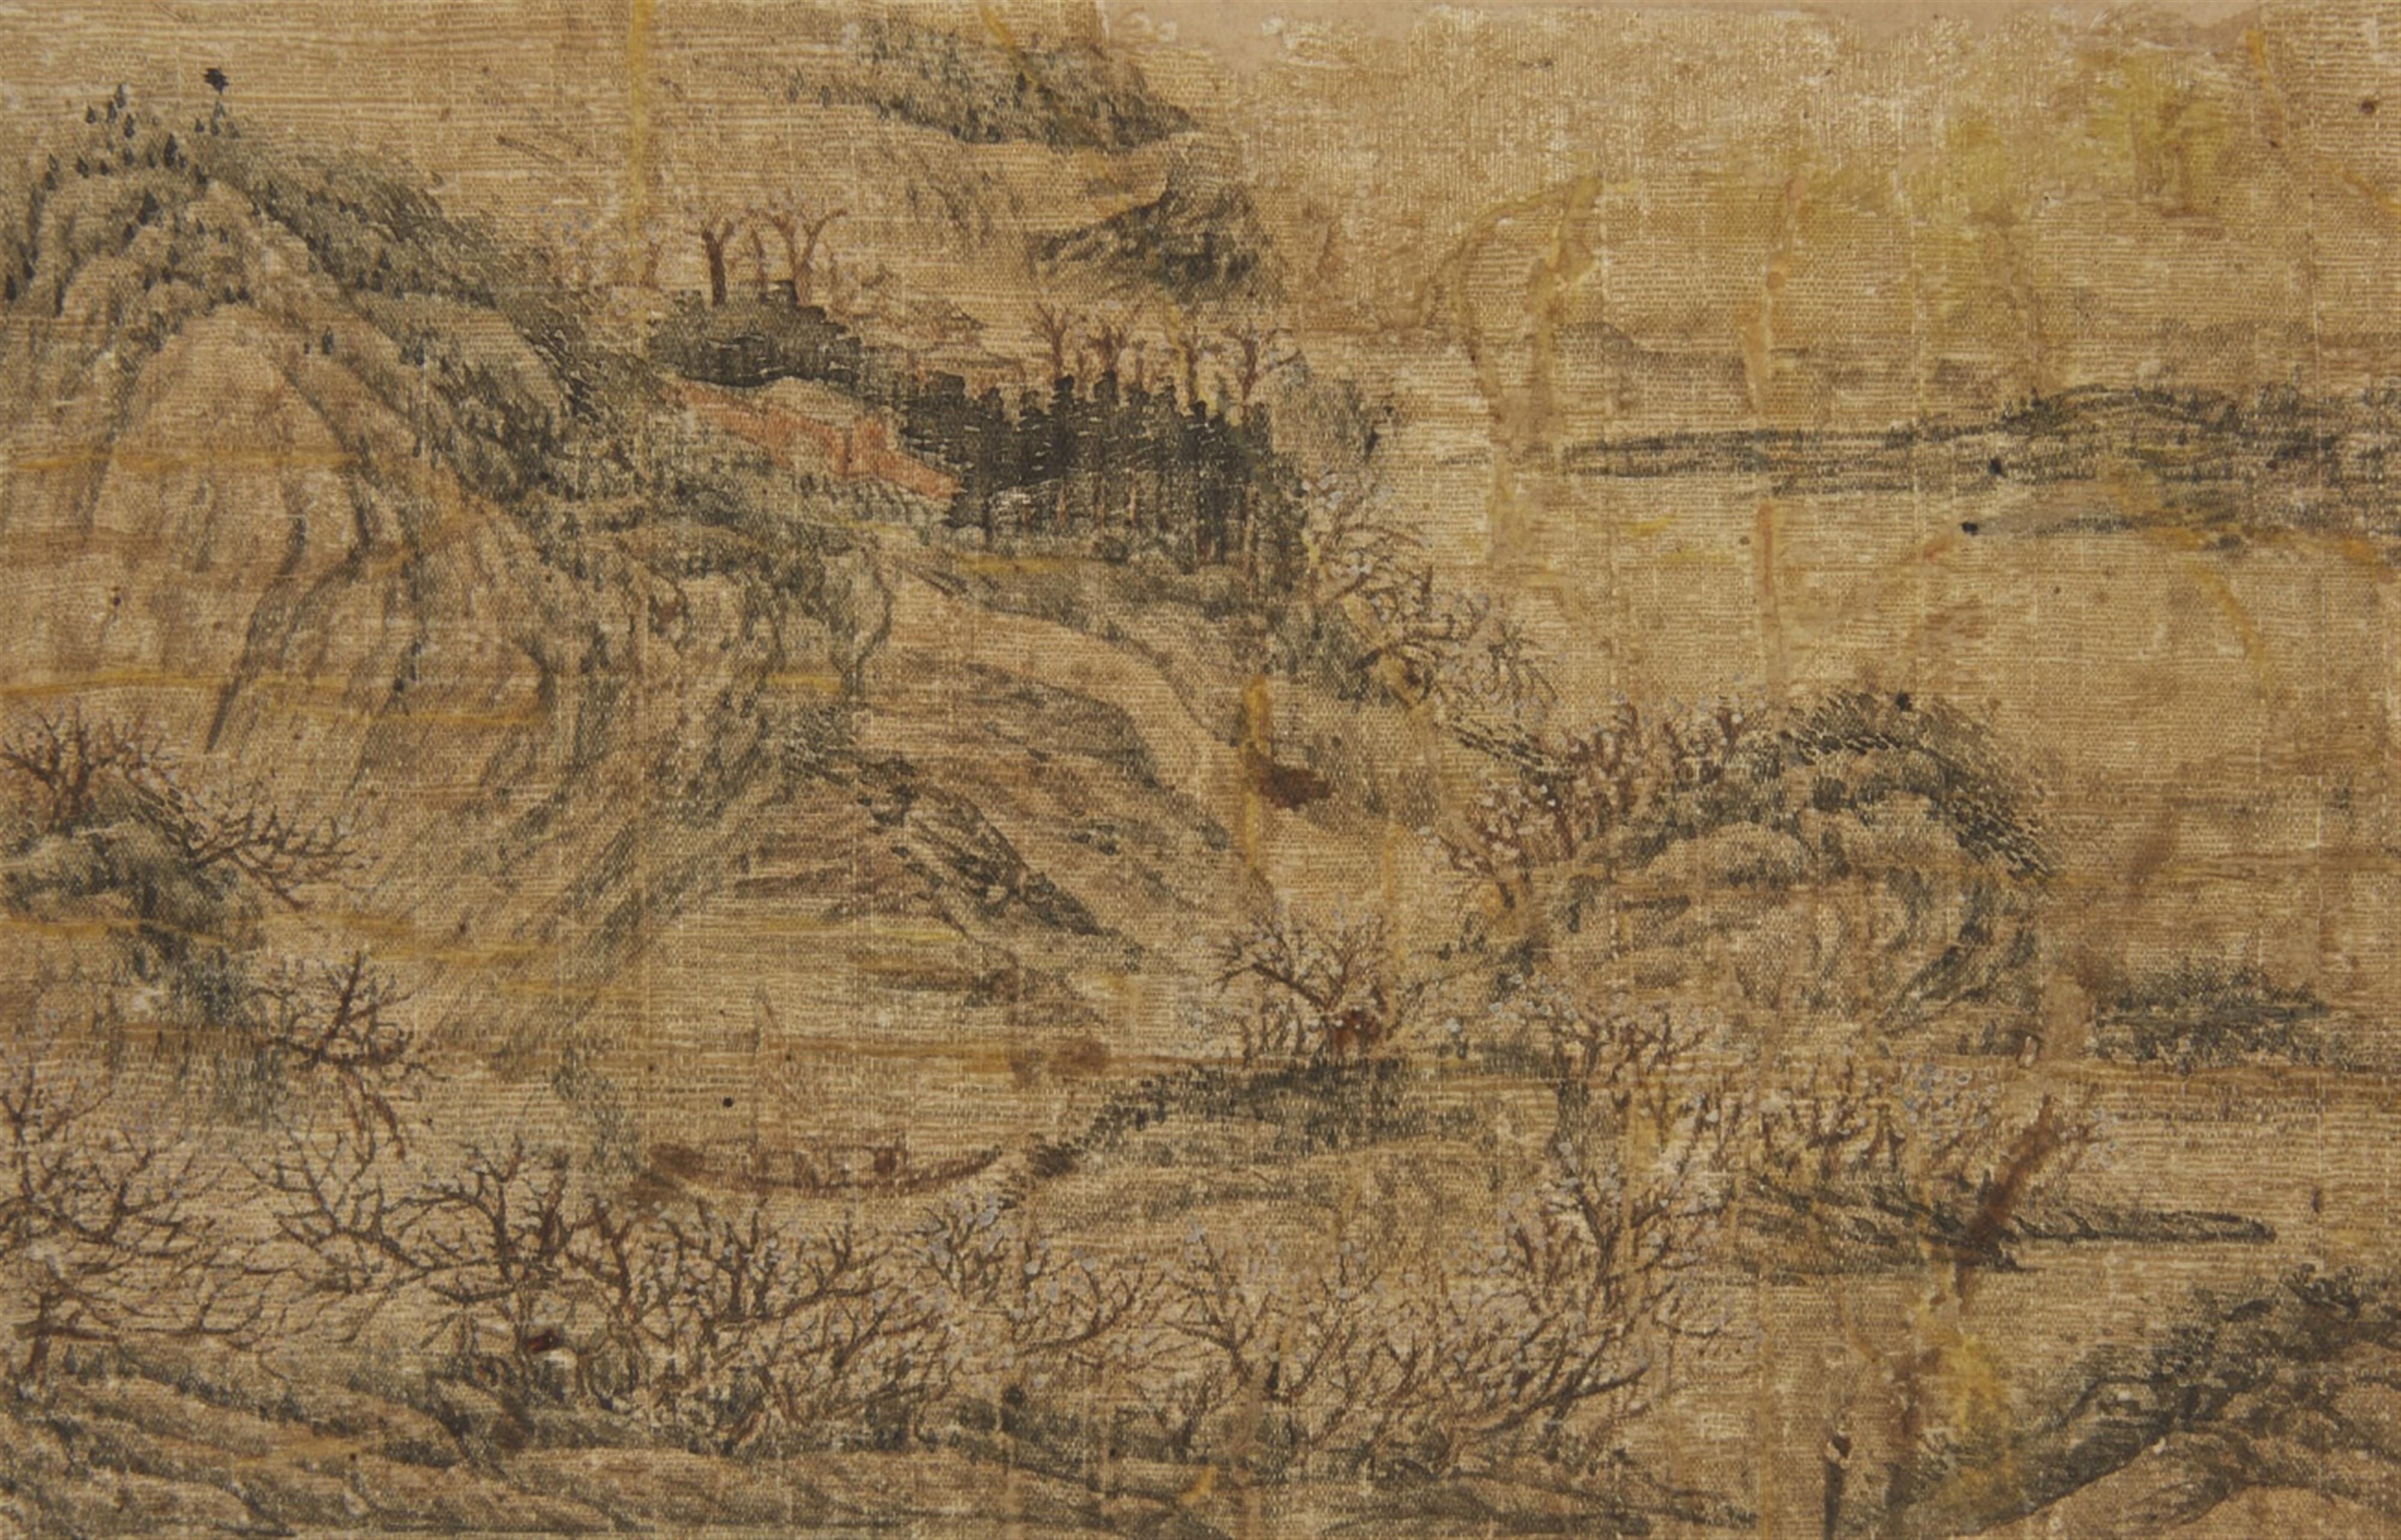 Qian Gu, in der Art - Album mit dem Titel "Ming Qian Gu shanshui ce", bestehend aus sechs losen Doppelseiten mit Landschaftdarstellungen im Stil des Qian Gu (1508-1578). Wasserschäden. Stoff bespannt... - image-2